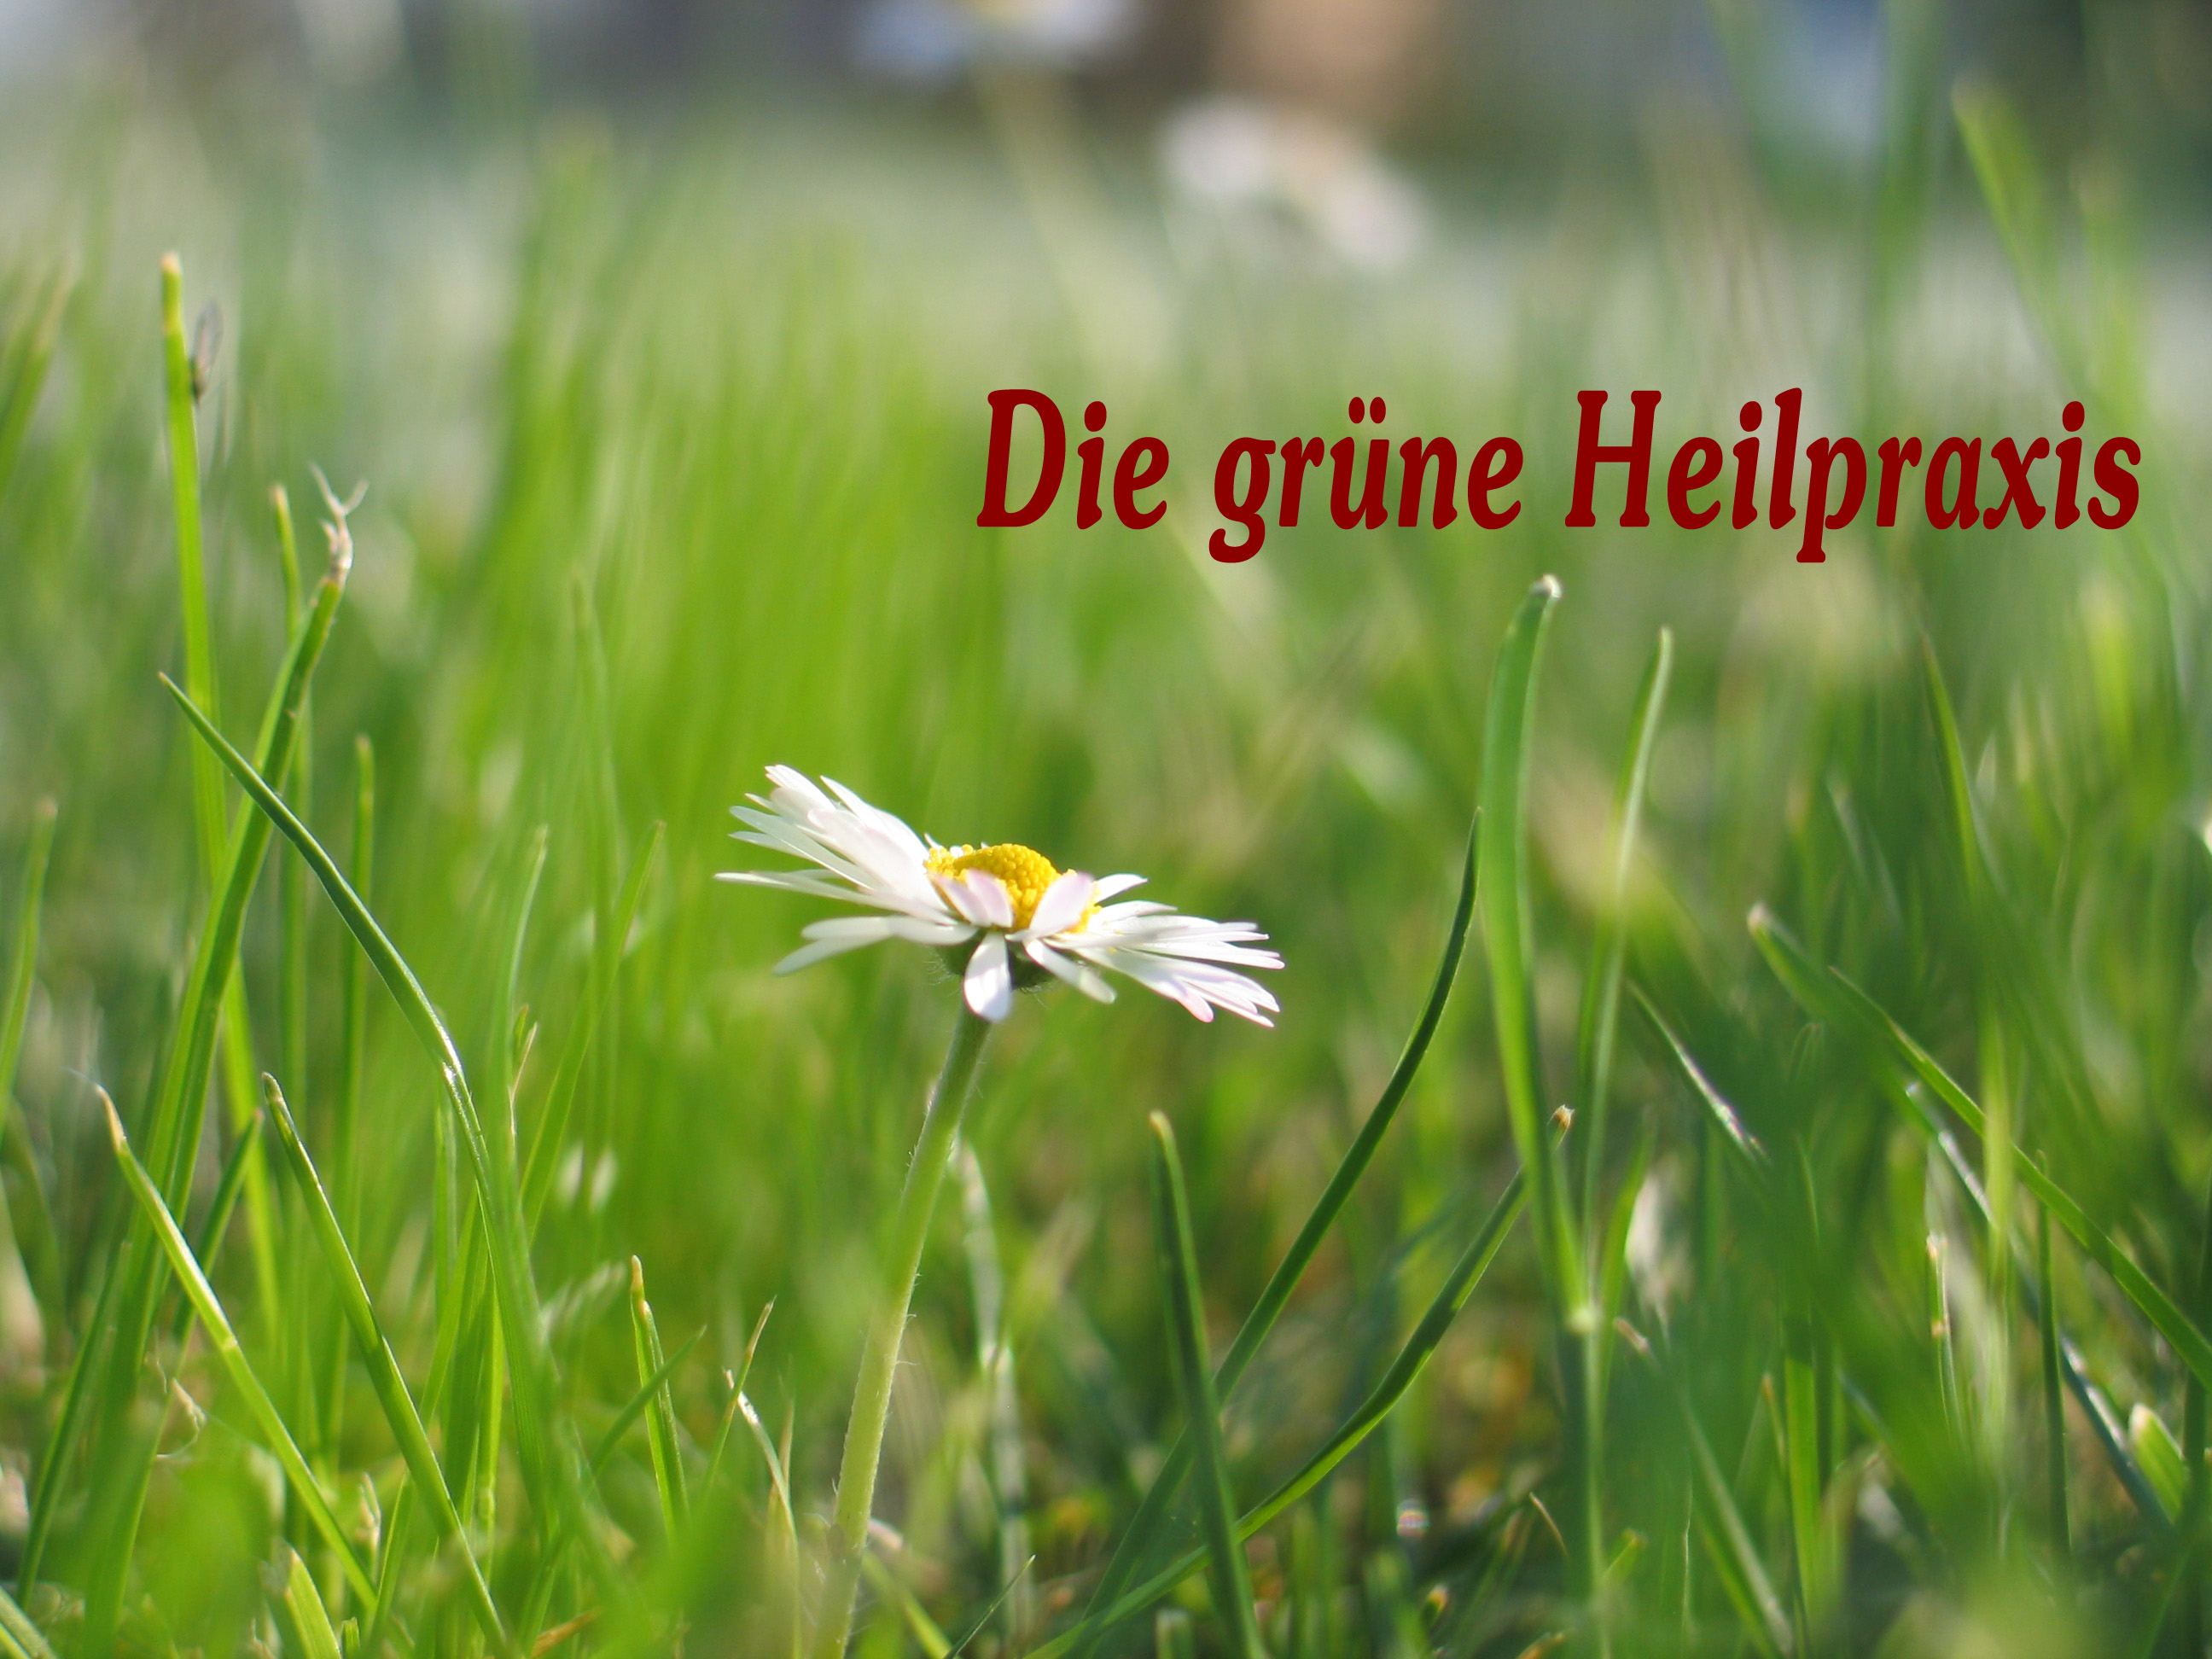 www.Die grne Heilpraxis.de